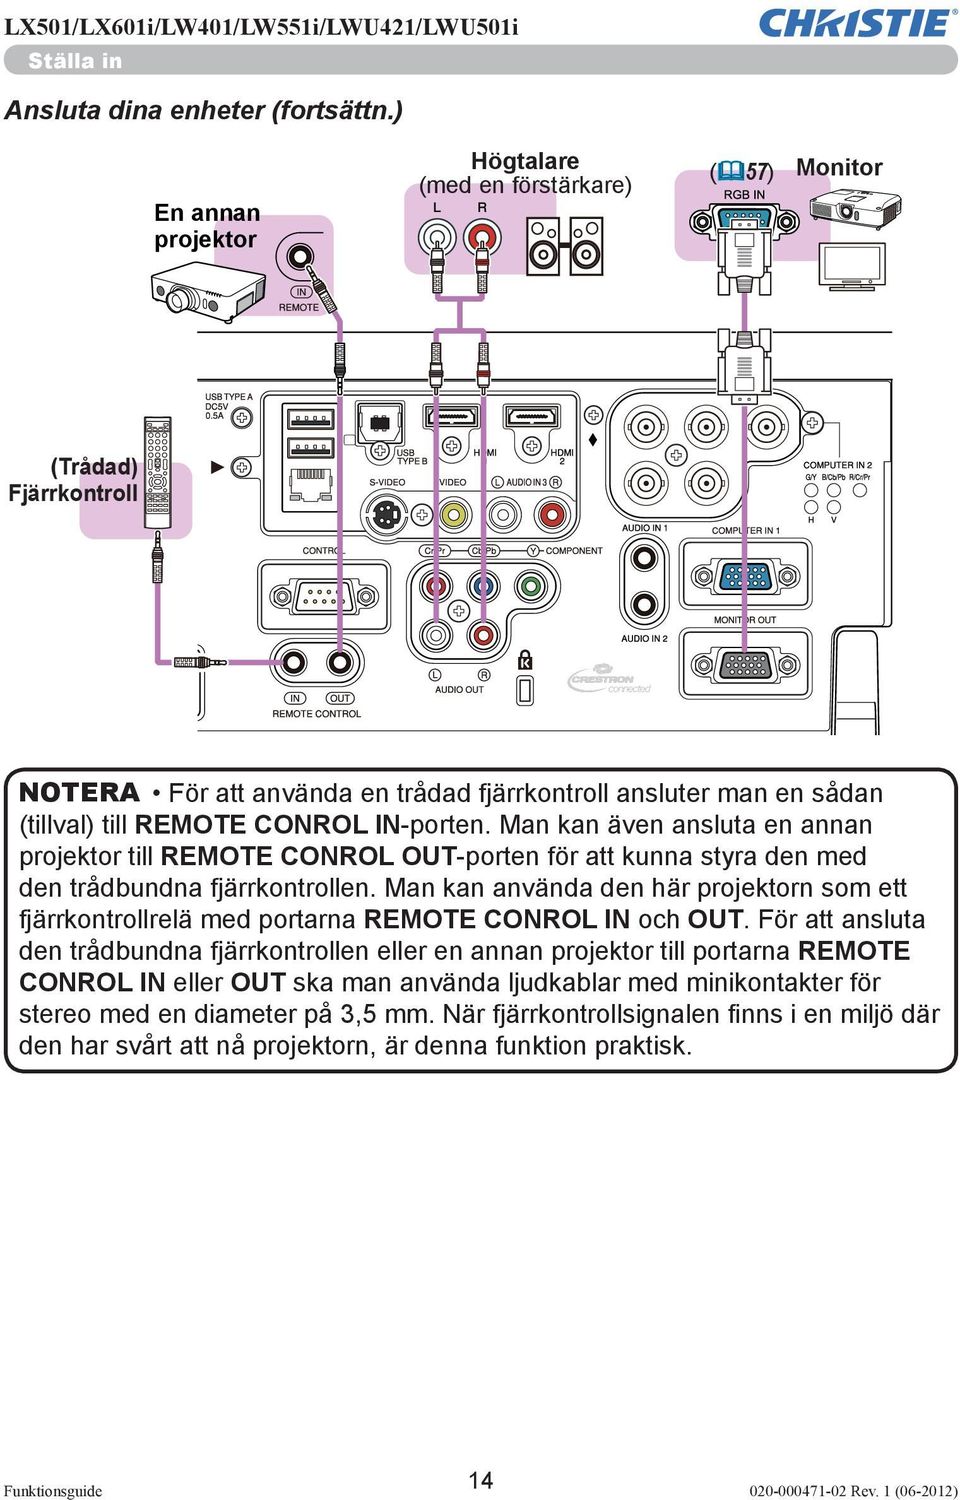 IN-porten. Man kan även ansluta en annan projektor till REMOTE CONROL OUT-porten för att kunna styra den med den trådbundna fjärrkontrollen.